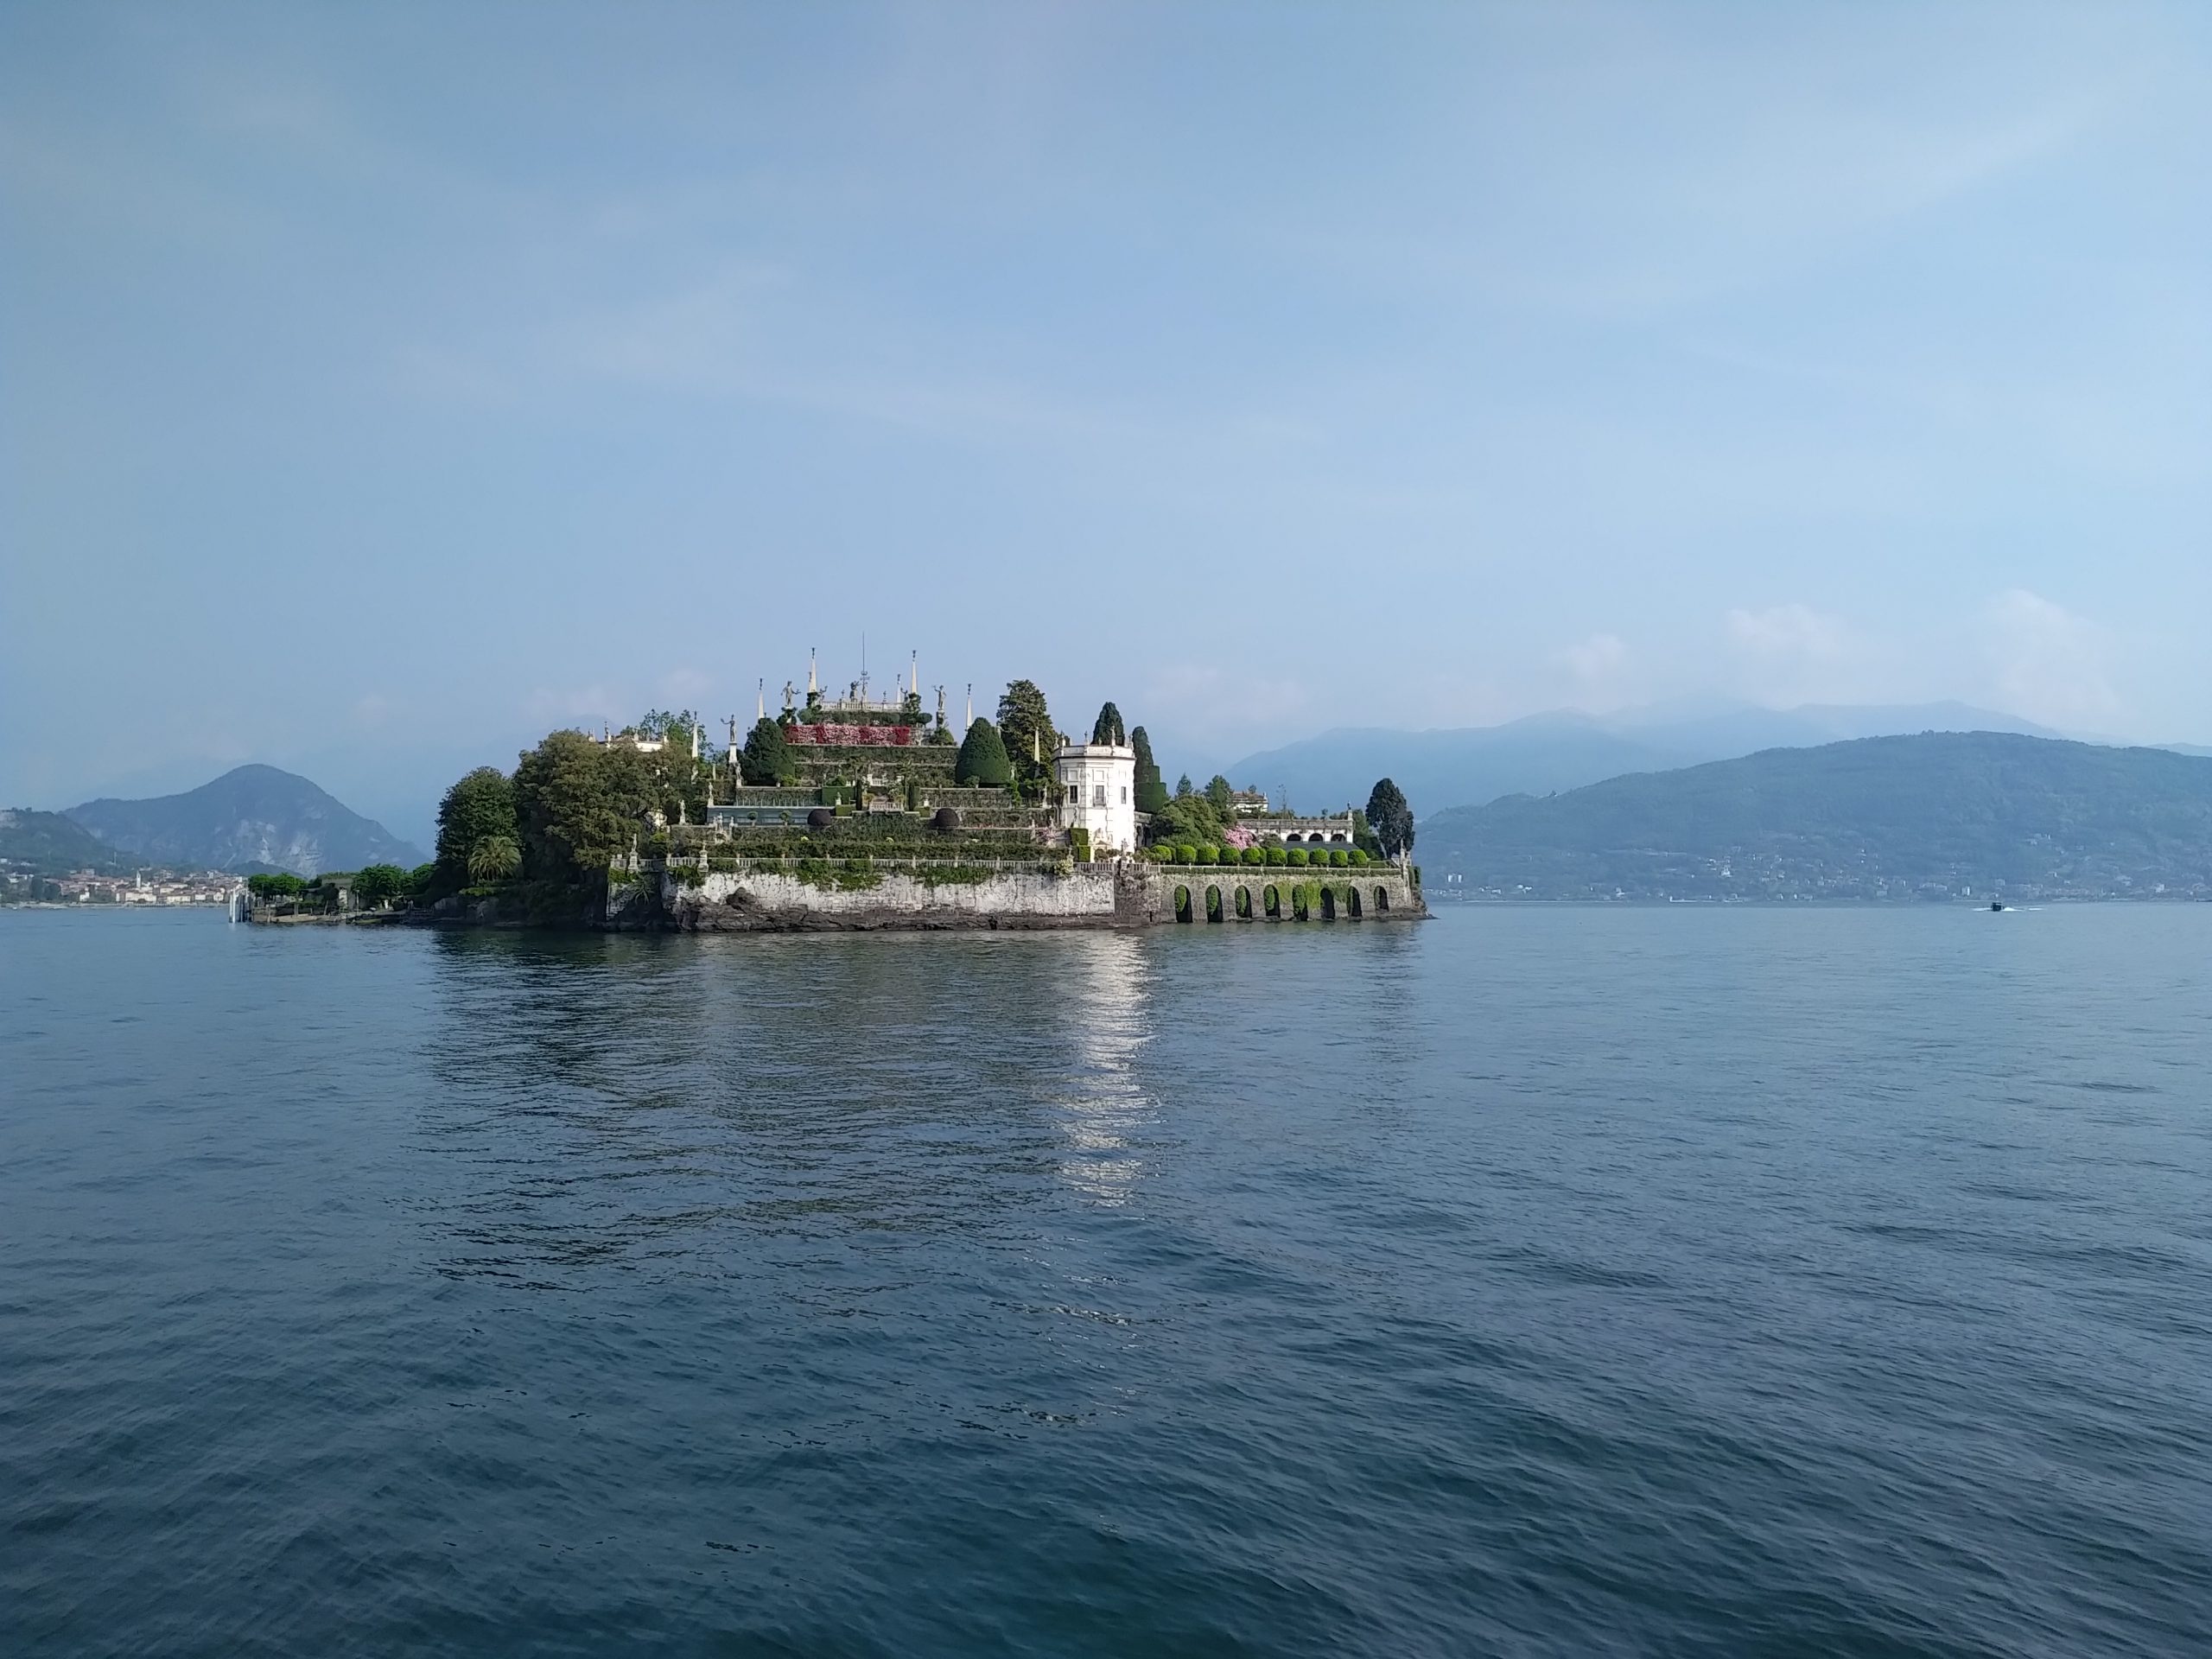 Isola Bella on lake Maggiore